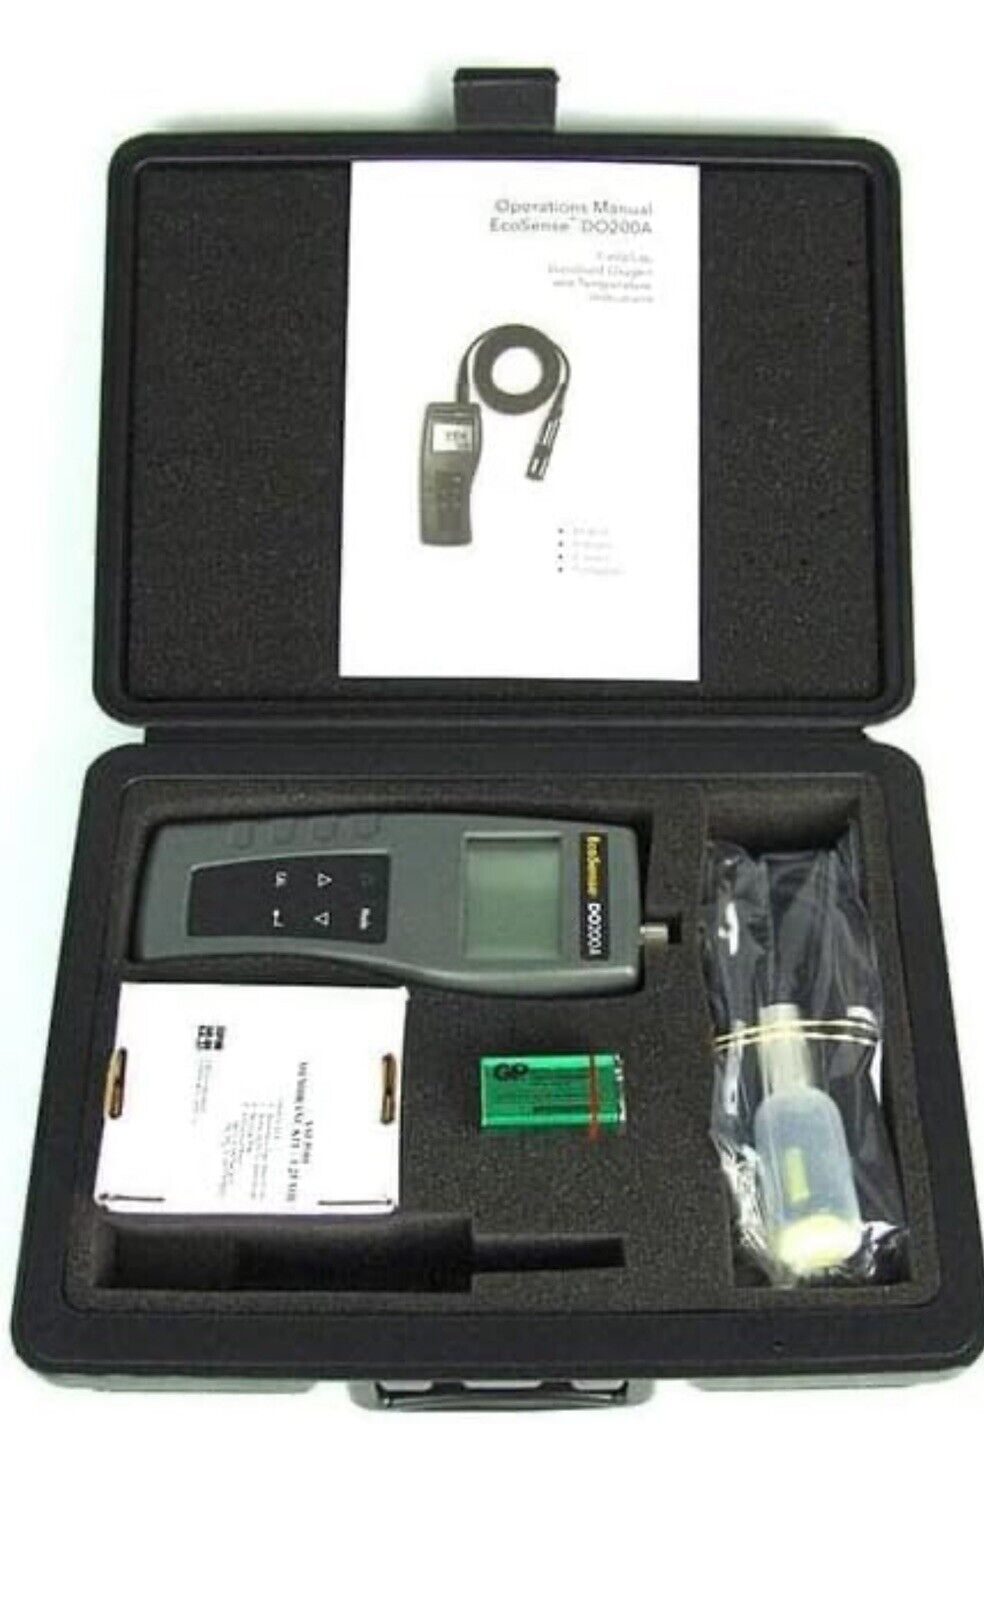 YSI DO200 Kit EcoSense DO 200 Dissolved Oxygen Meter Kit - Brand New